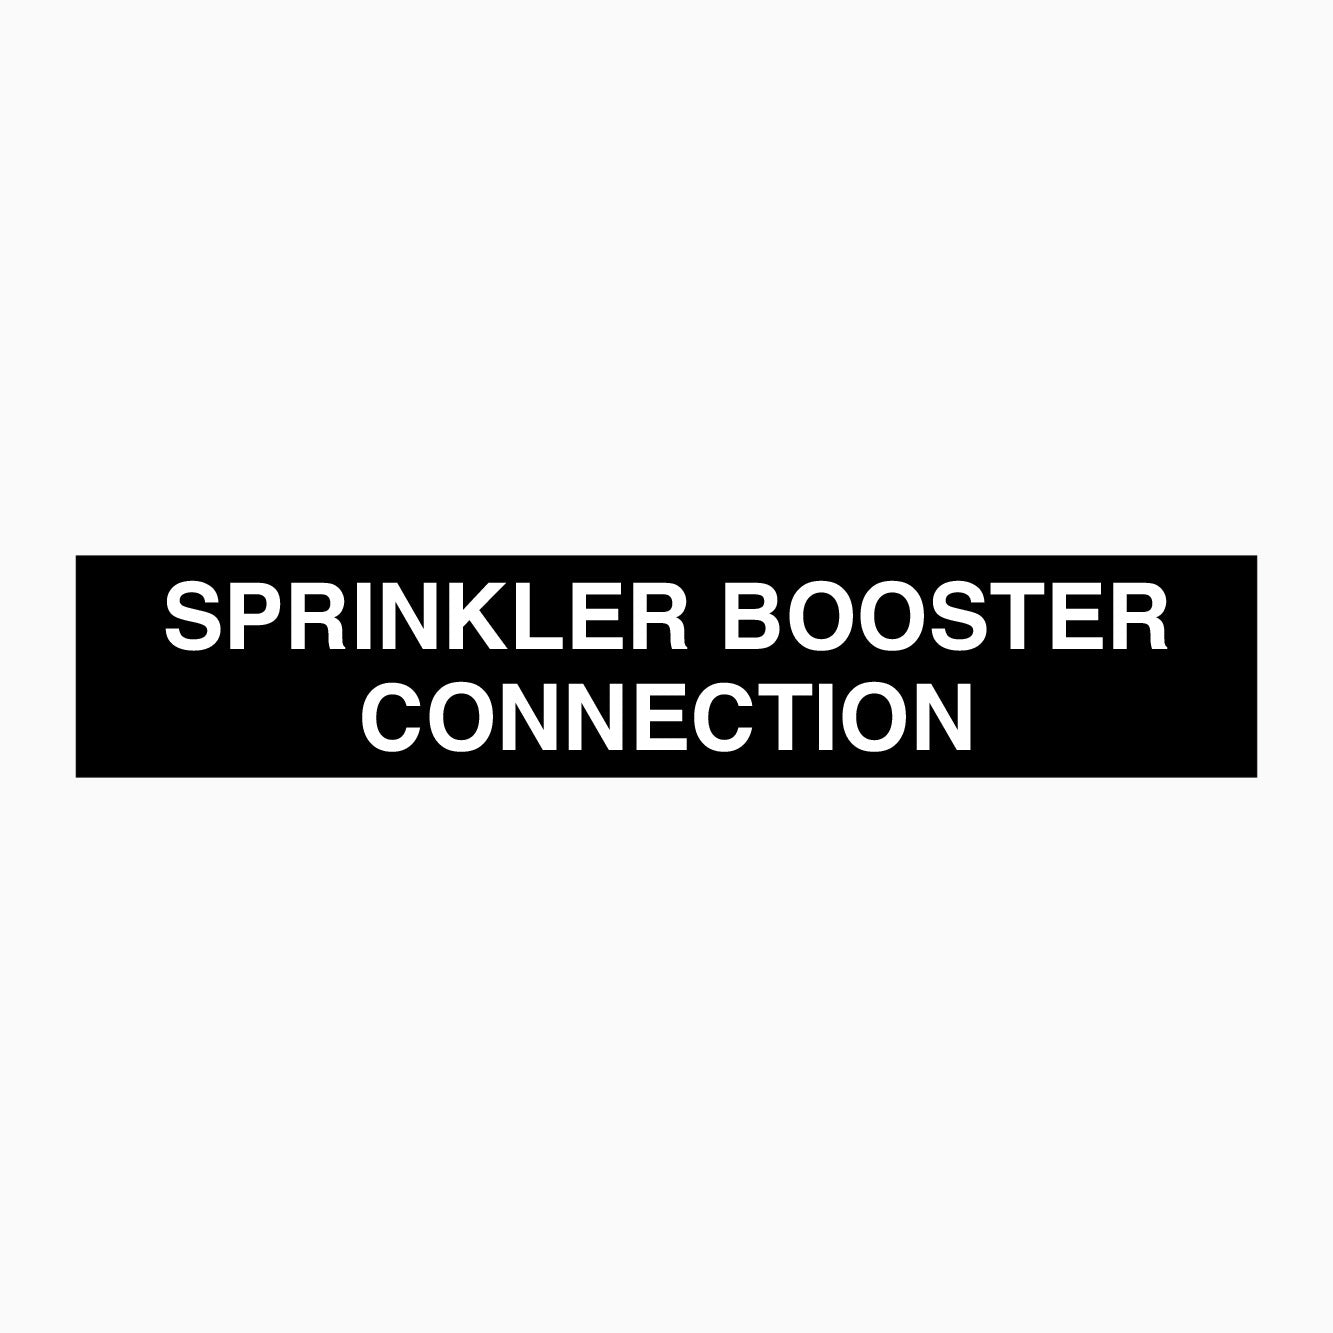 SPRINKLER BOOSTER CONNECTION SIGN